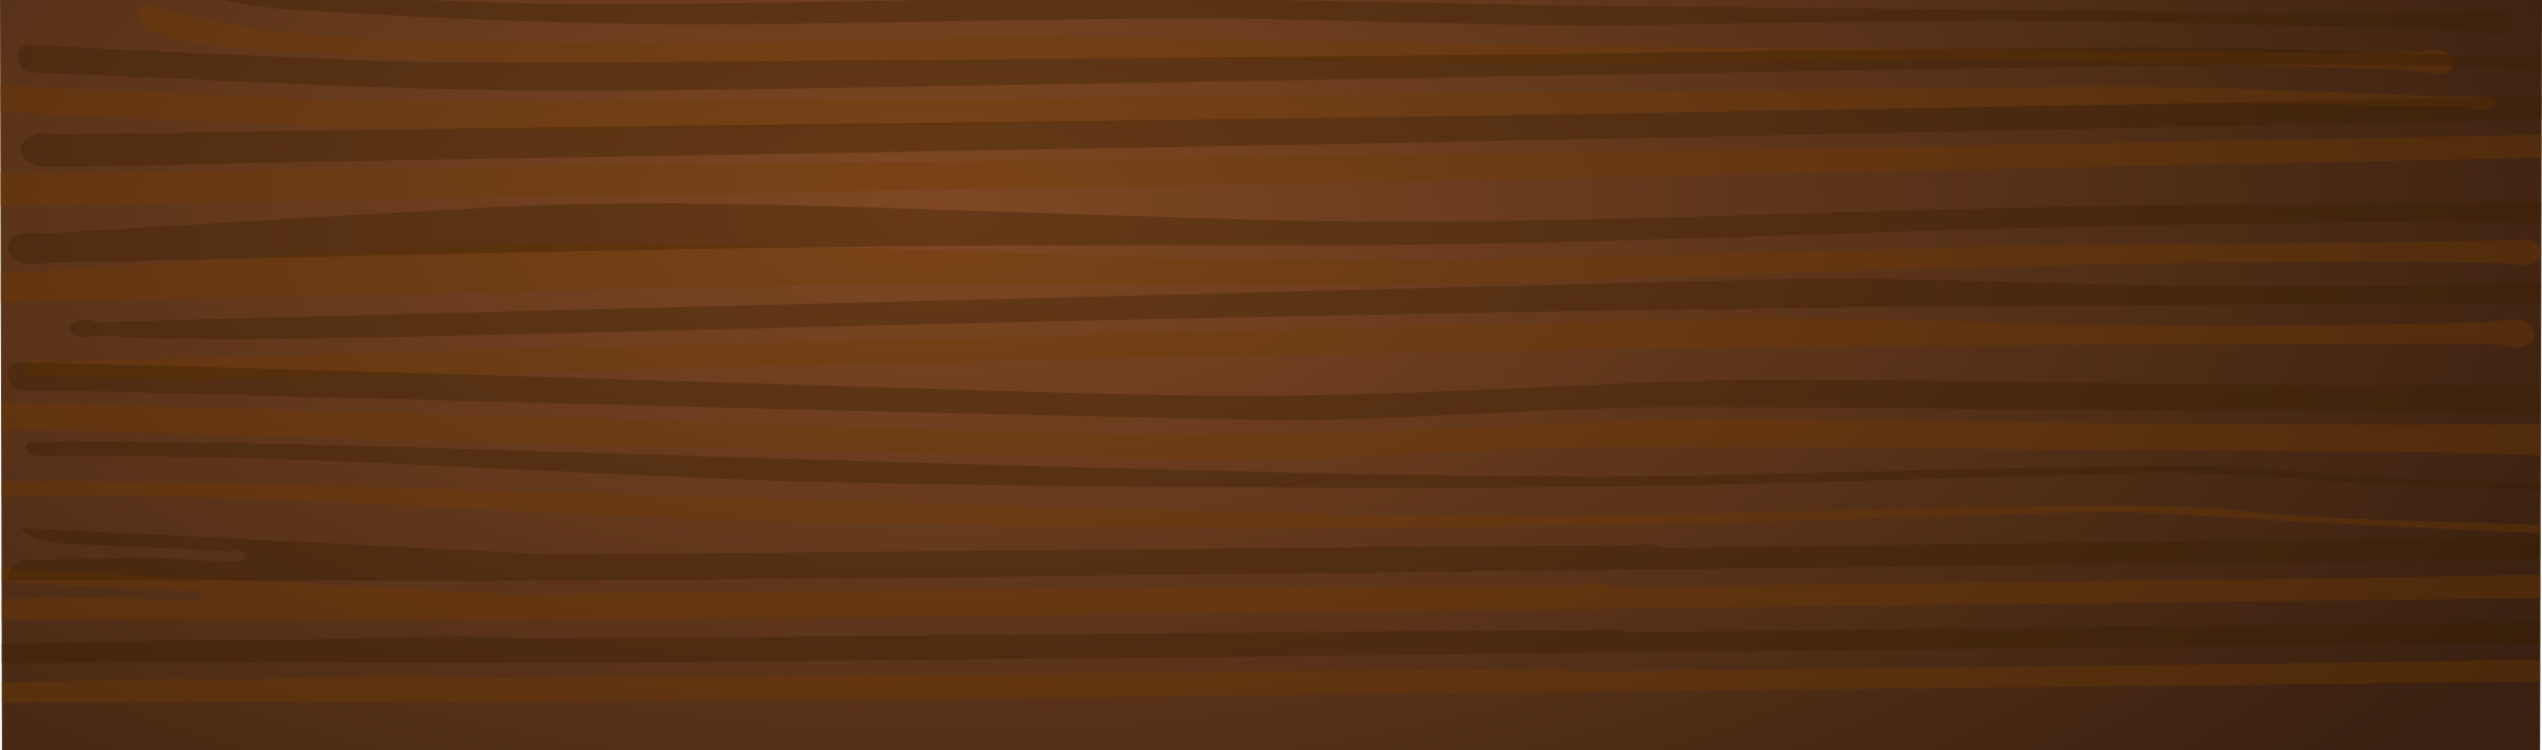 Computer Wallpaper,brown,light - Wooden Plank Clipart Png - HD Wallpaper 